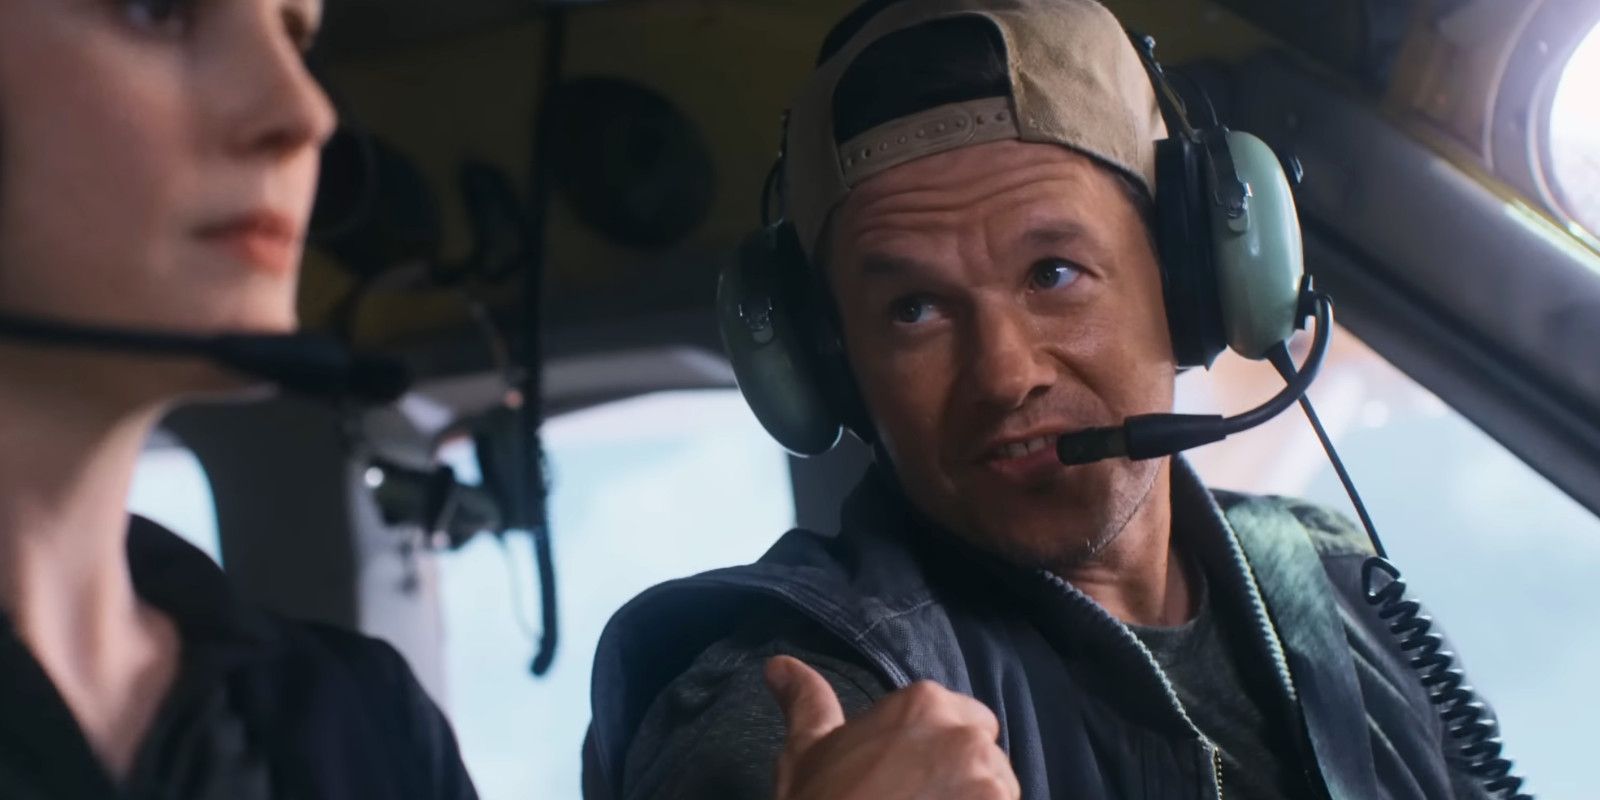 Mark Wahlberg levantando o polegar e usando um capacete de piloto na cabine de um avião em Flight Risk